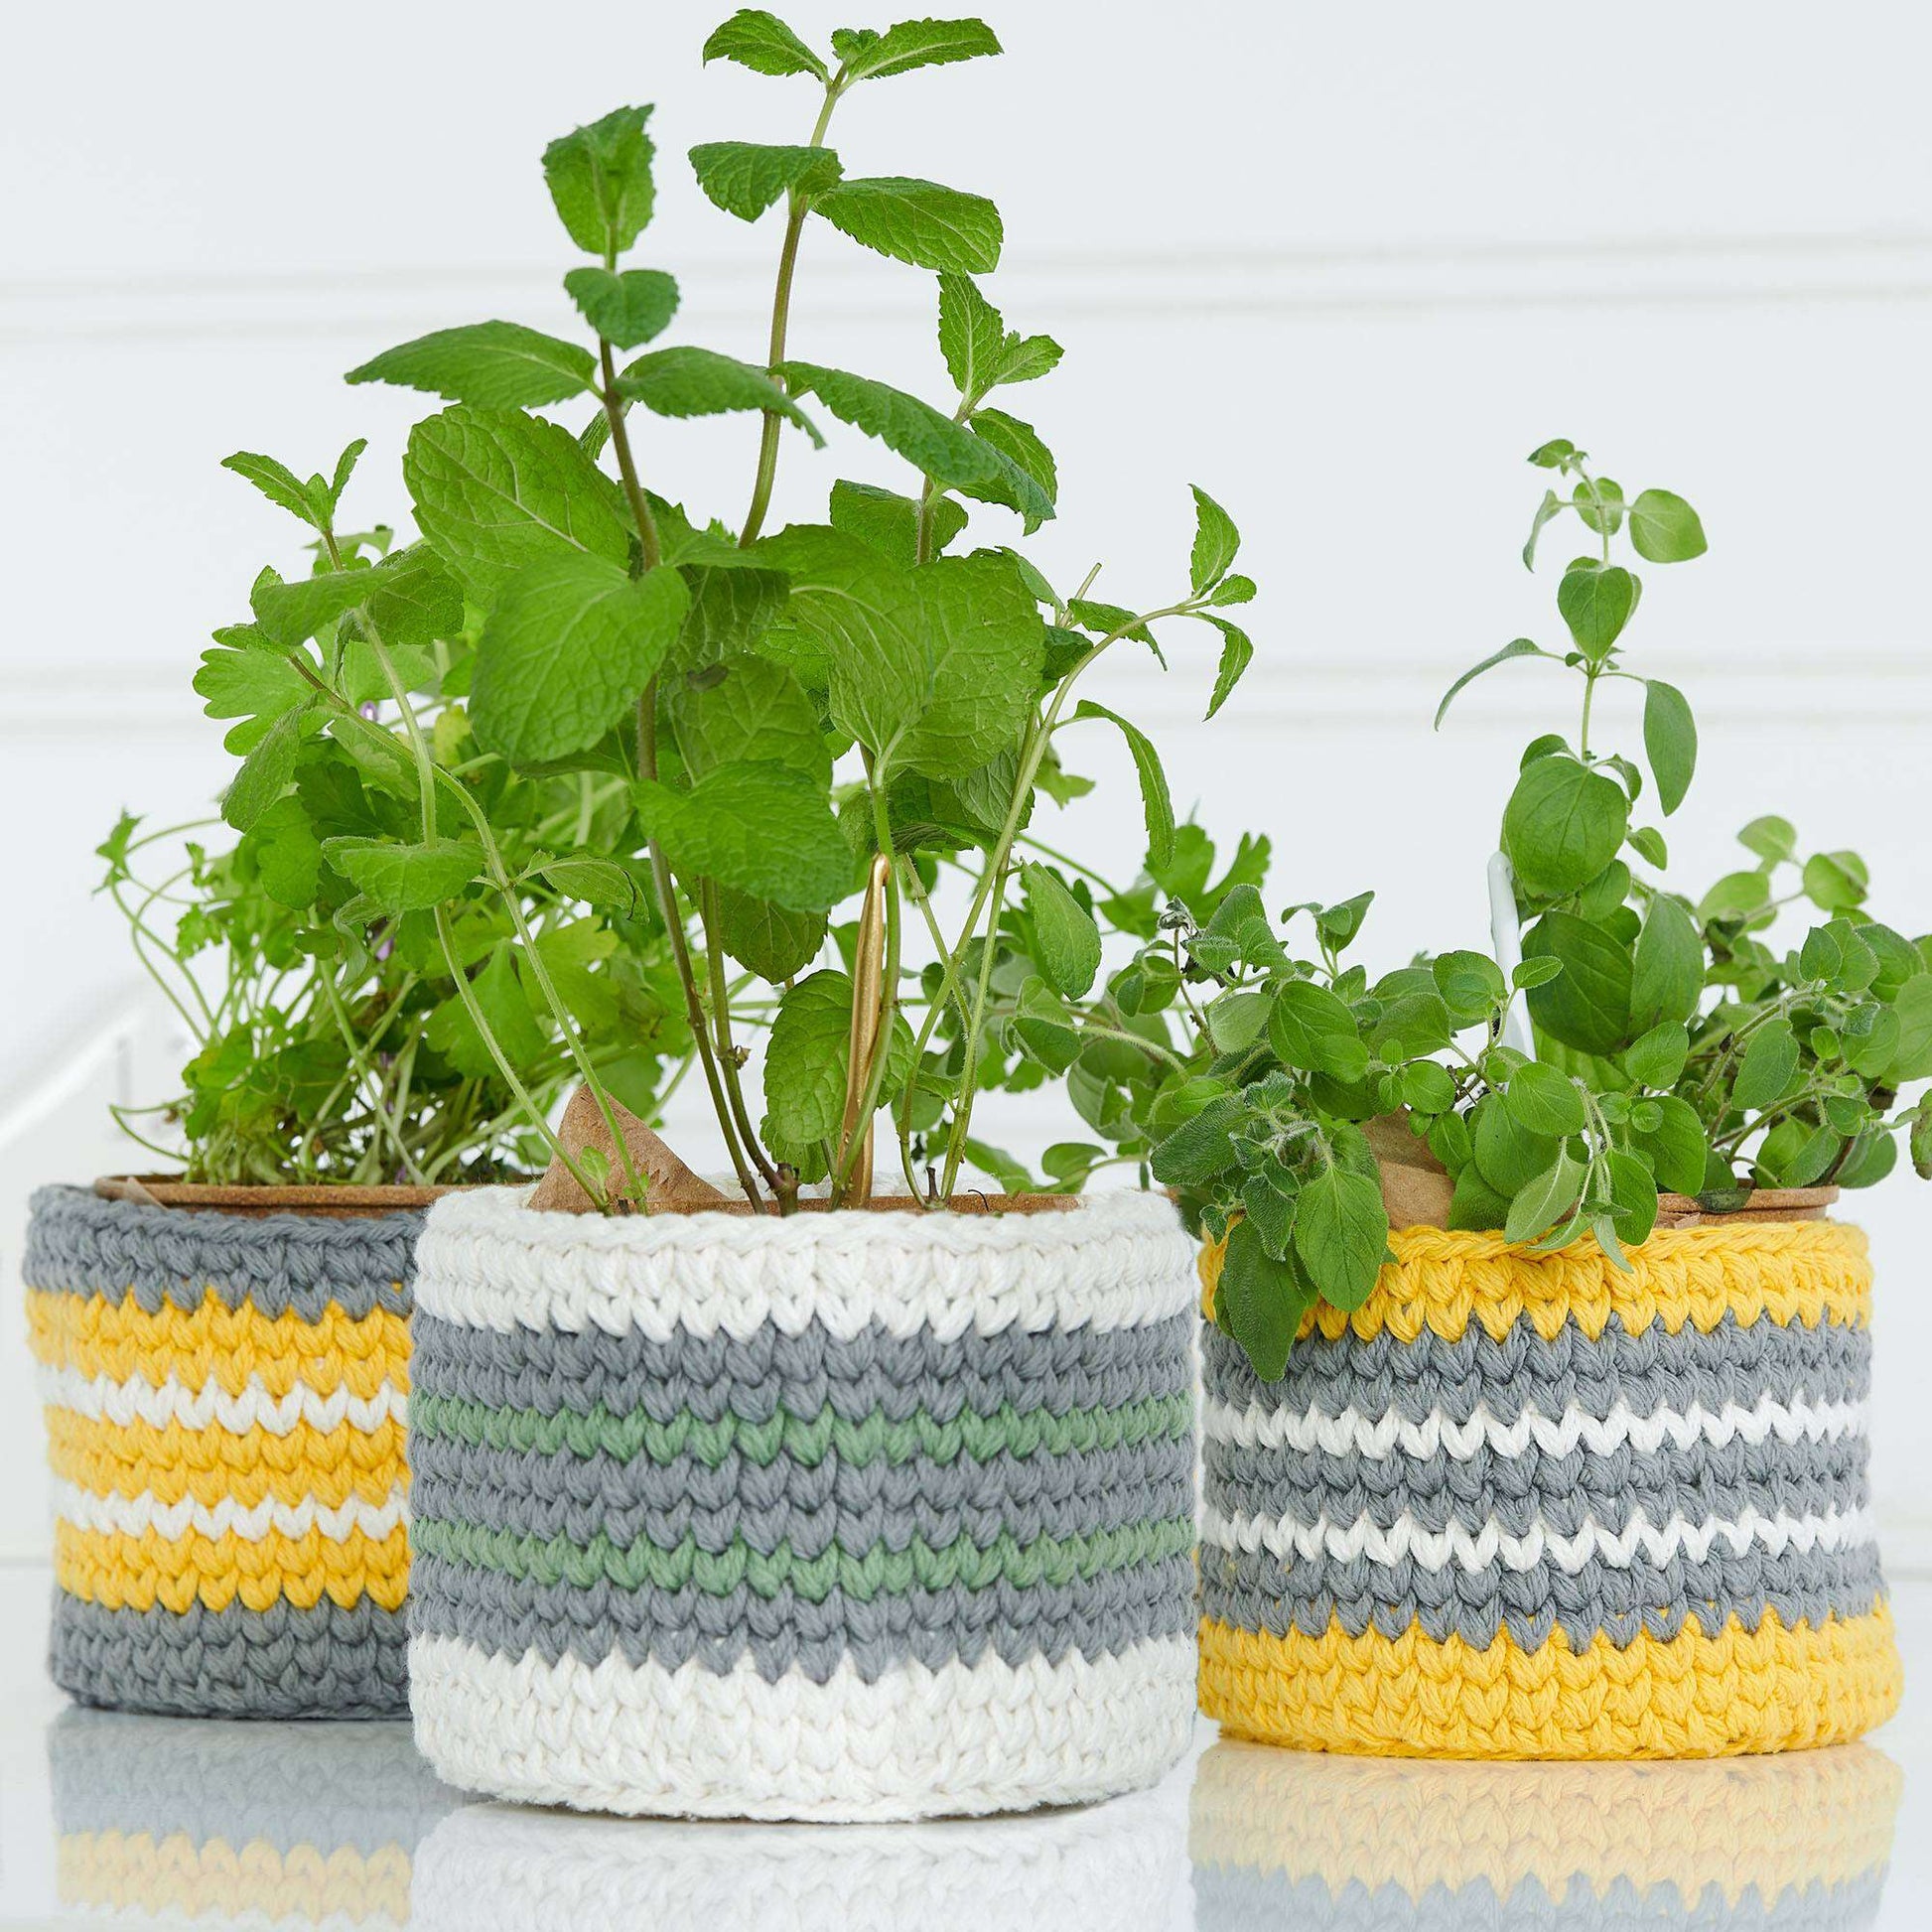 Lily Crochet Plant Basket Verison 1